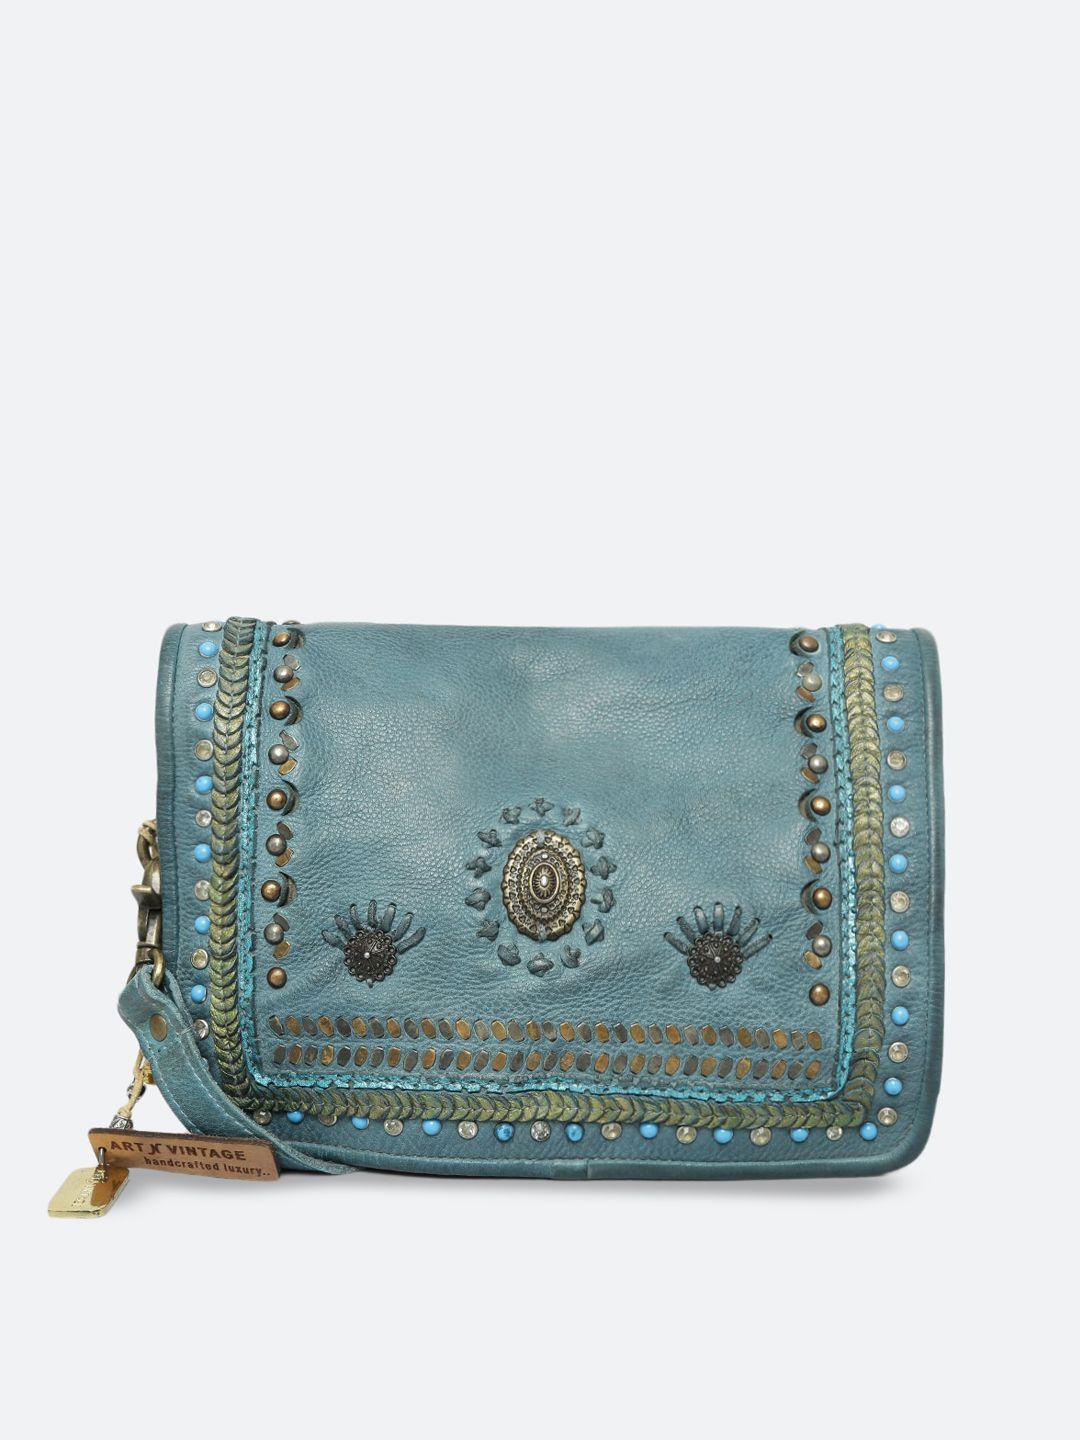 art n vintage embellished leather structured sling bag